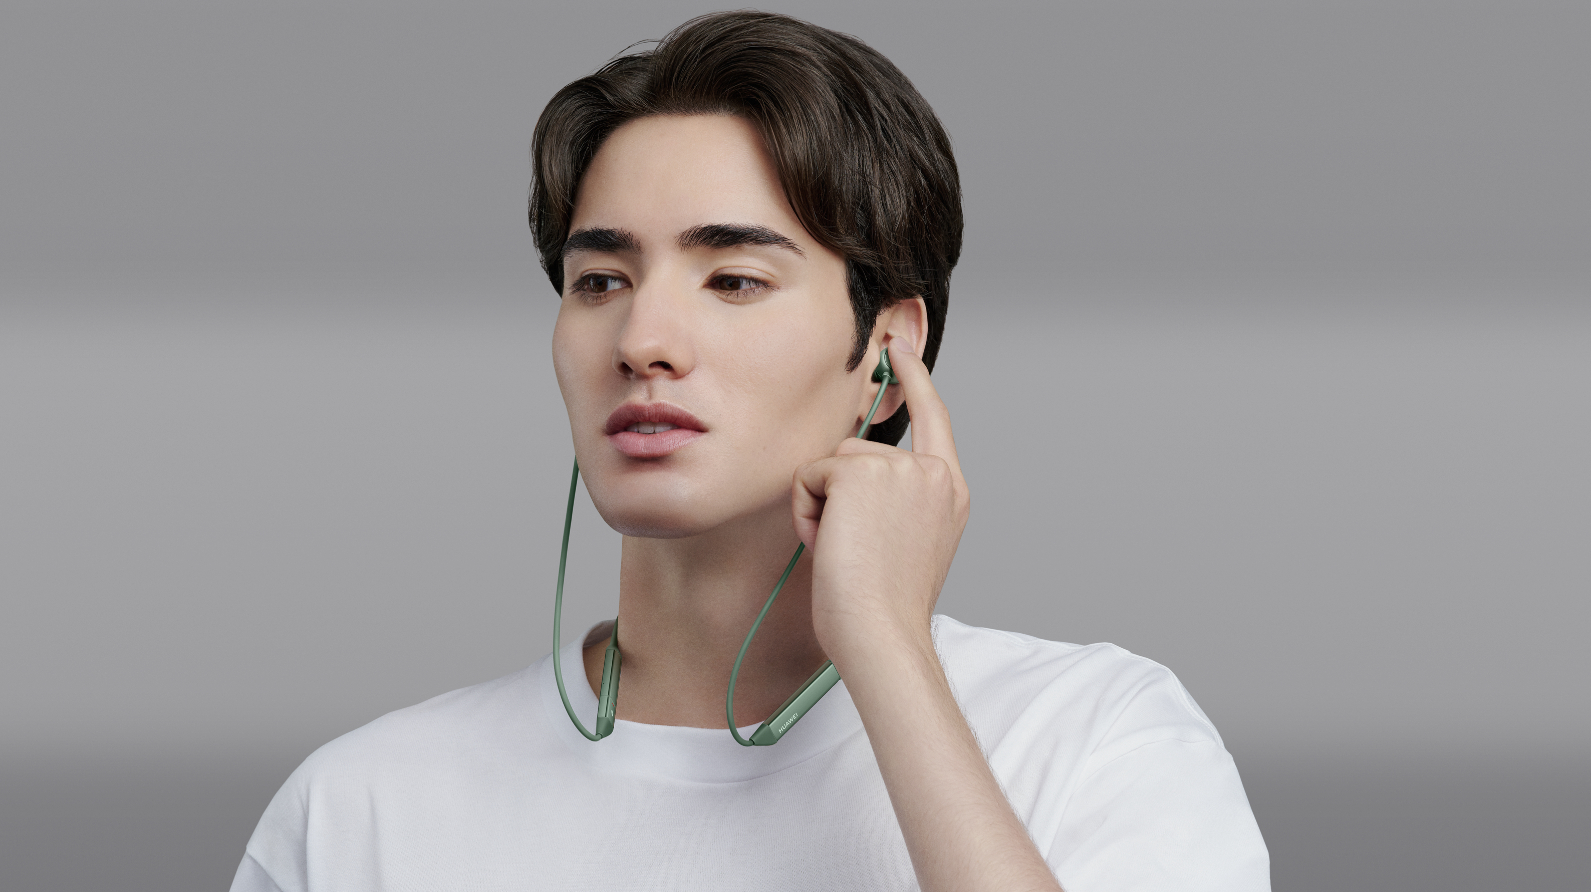 Bluetooth HUAWEI Kopfhörer Grün FreeLace In-ear Pro,